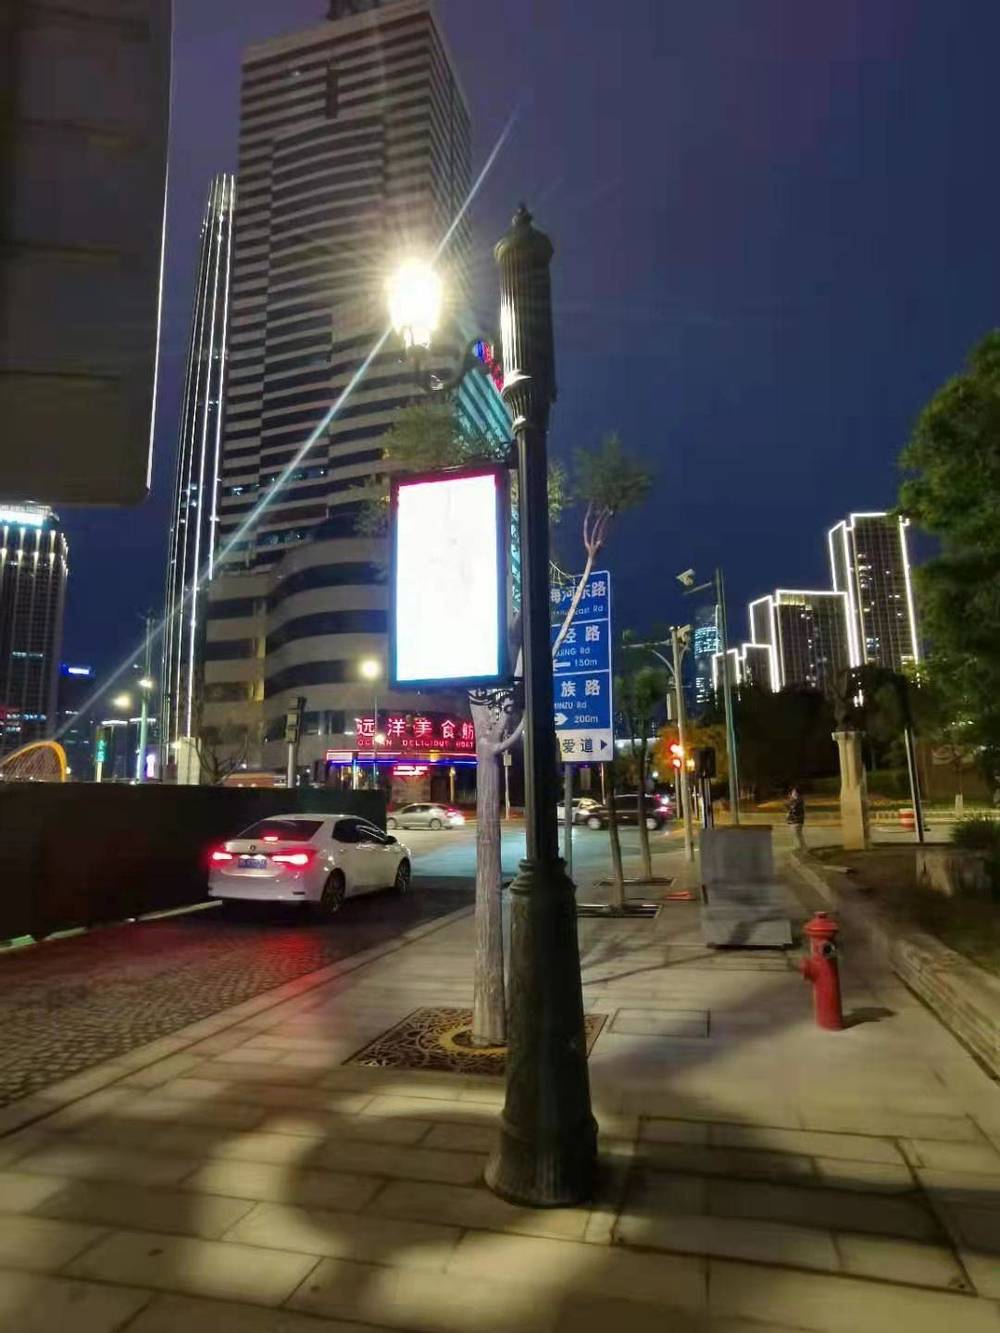 Inteligentna lampa uliczna Zhilian ICT oświetla jasną nocną scenę dzielnicy Tianjin Yifeng!